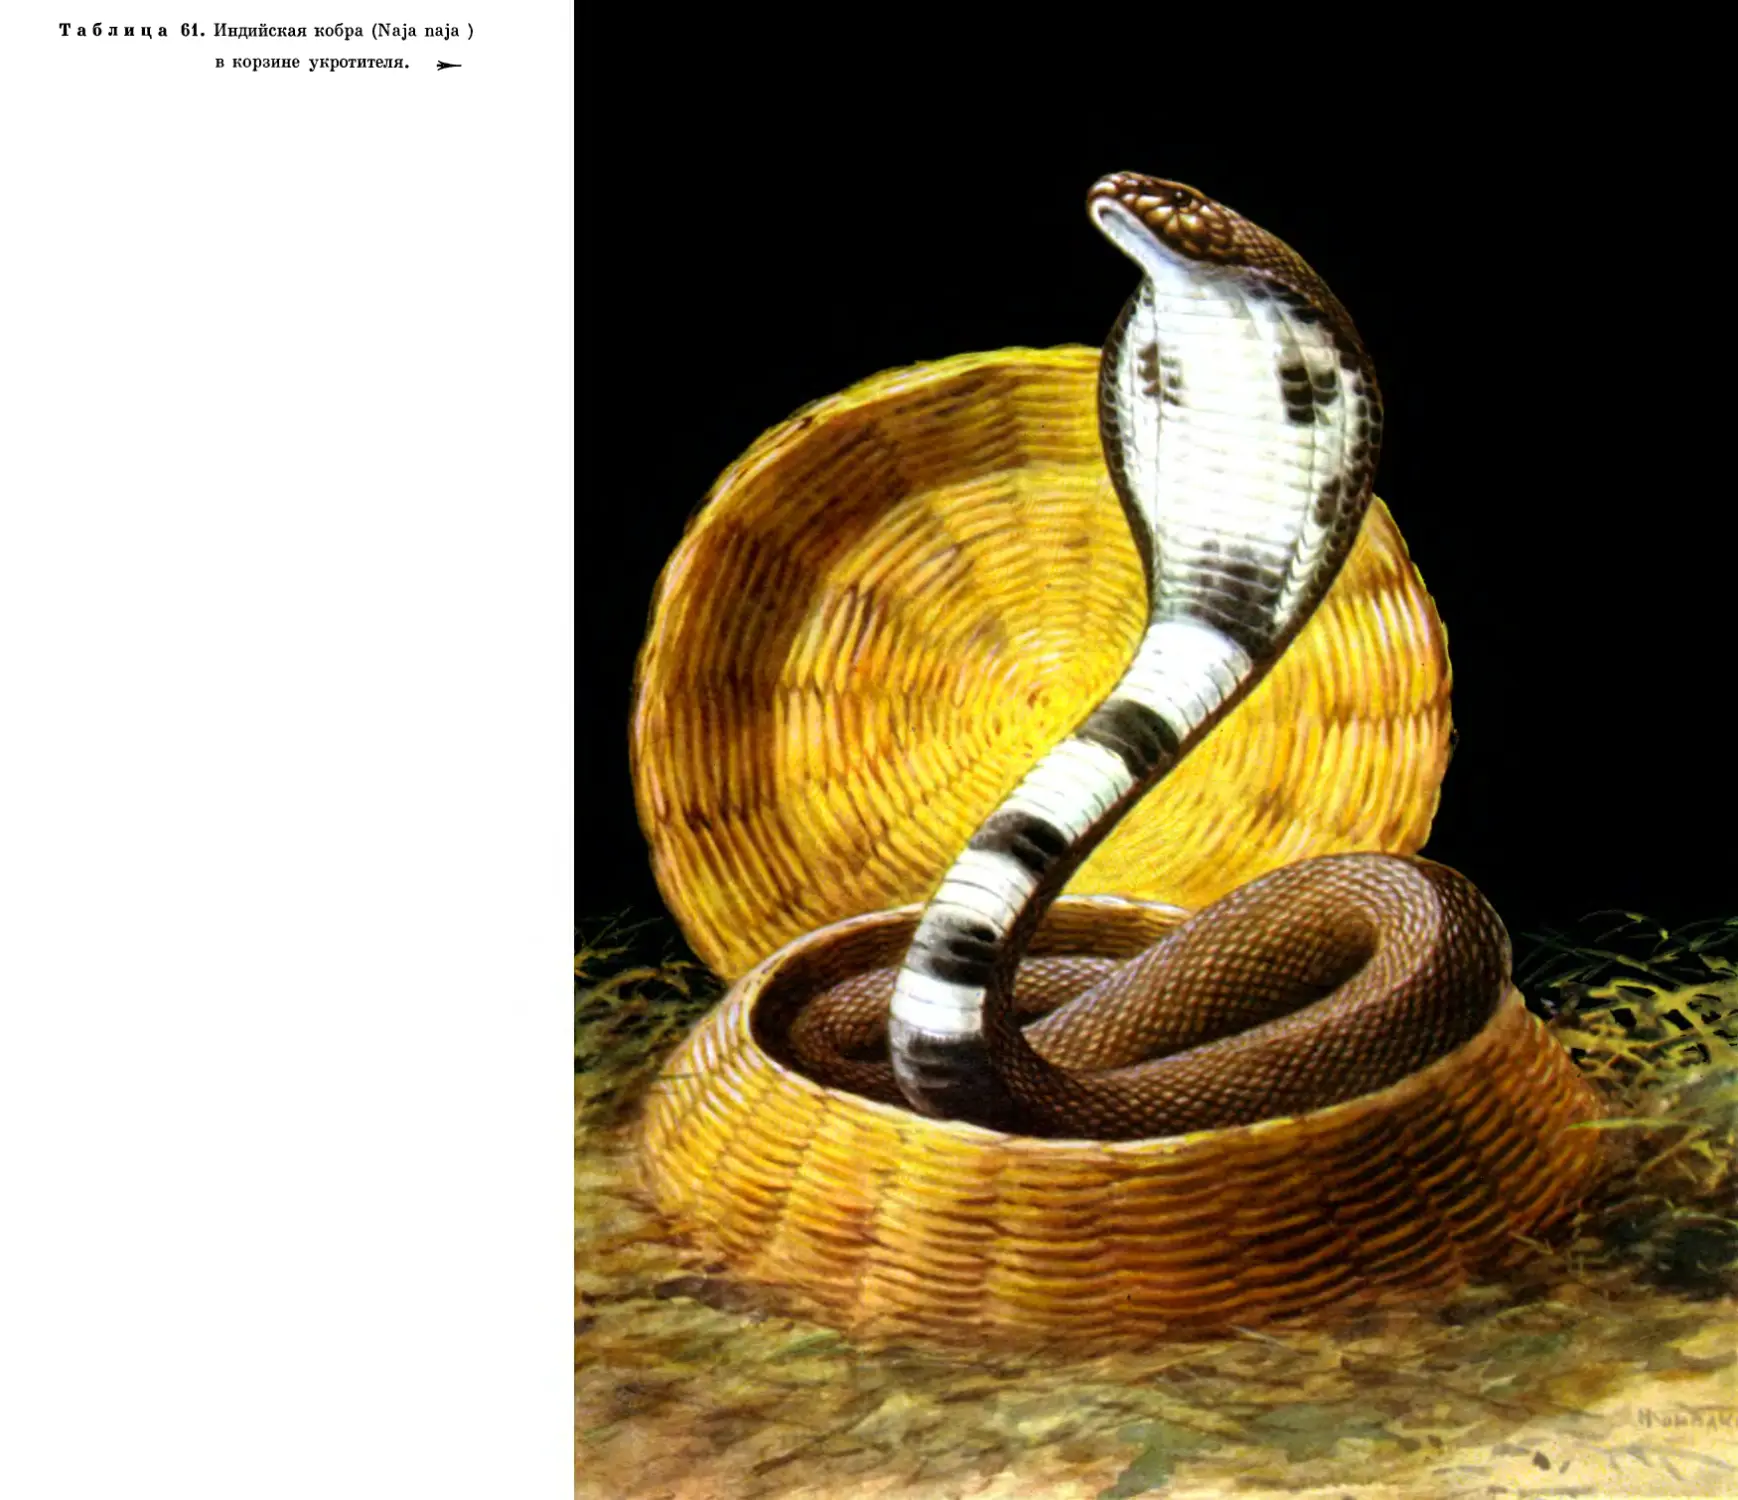 61. Индийская кобра в корзине укротителя.